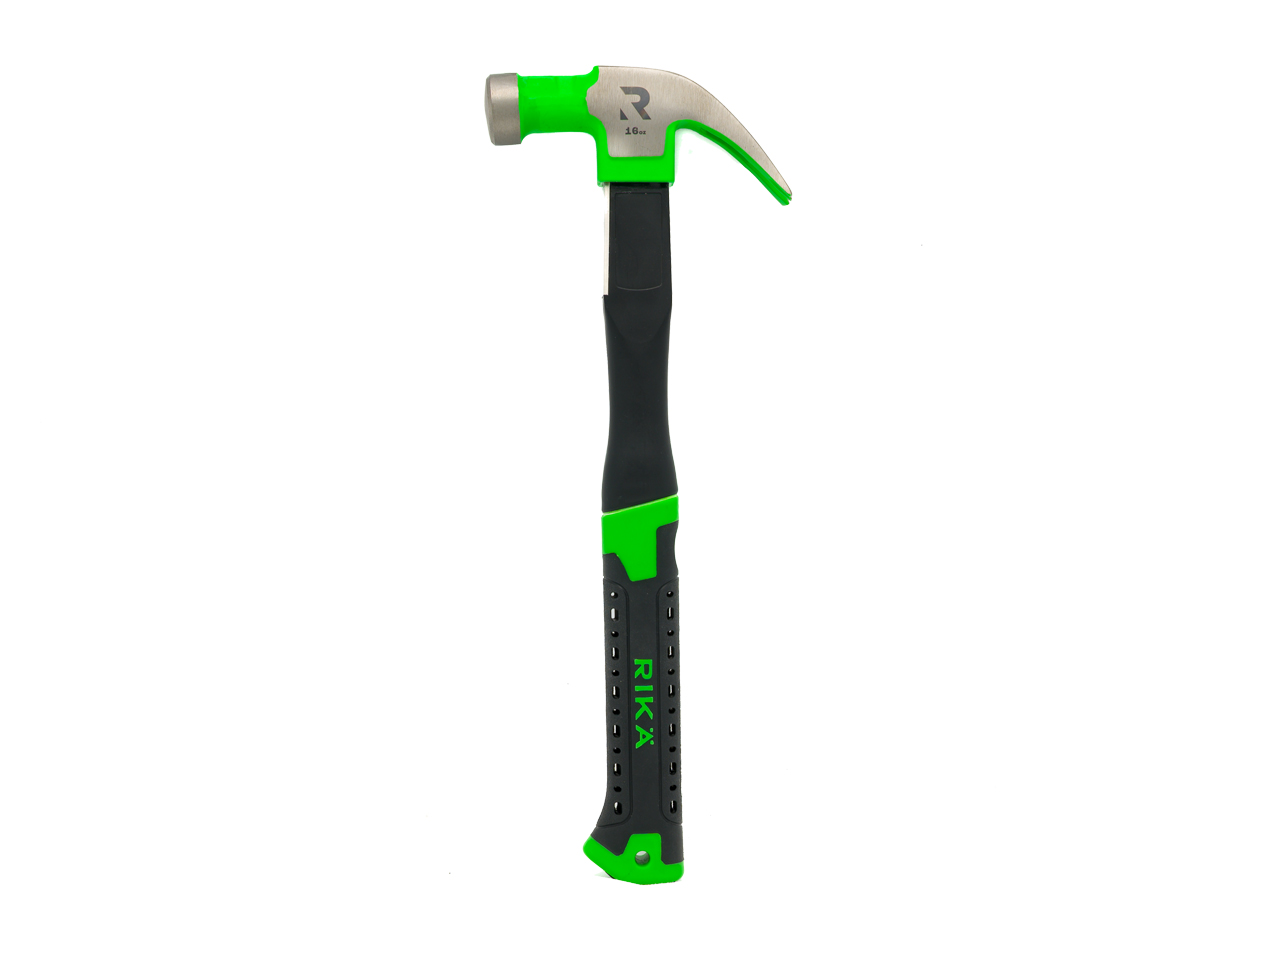 RIKA RIKA HTSR001 16oz Maxgrip Claw Hammer | ffx